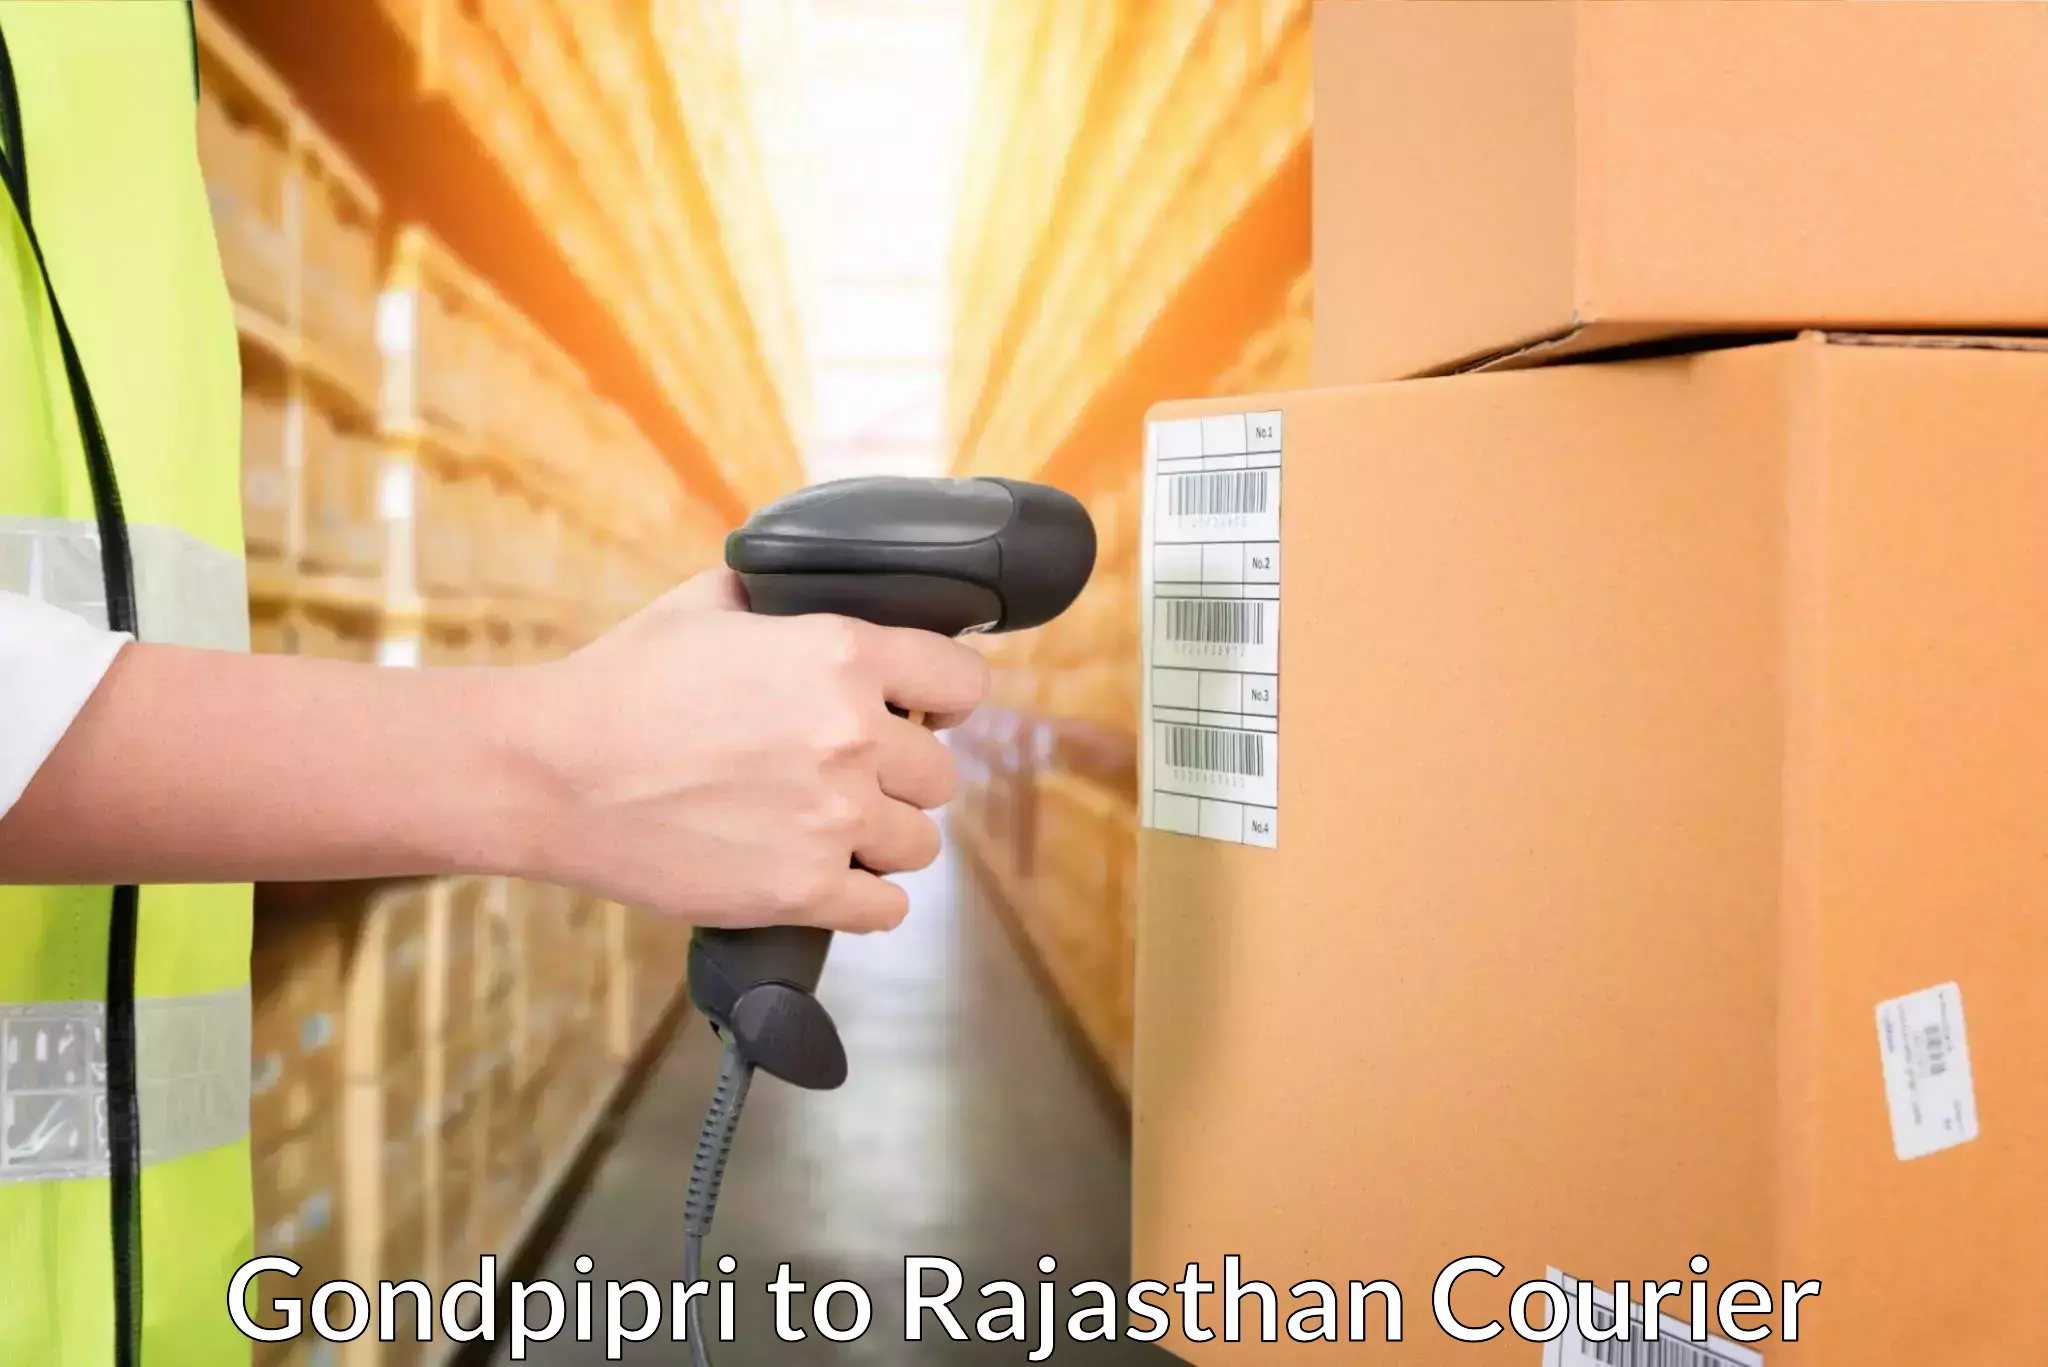 Door-to-door freight service Gondpipri to Rajasthan